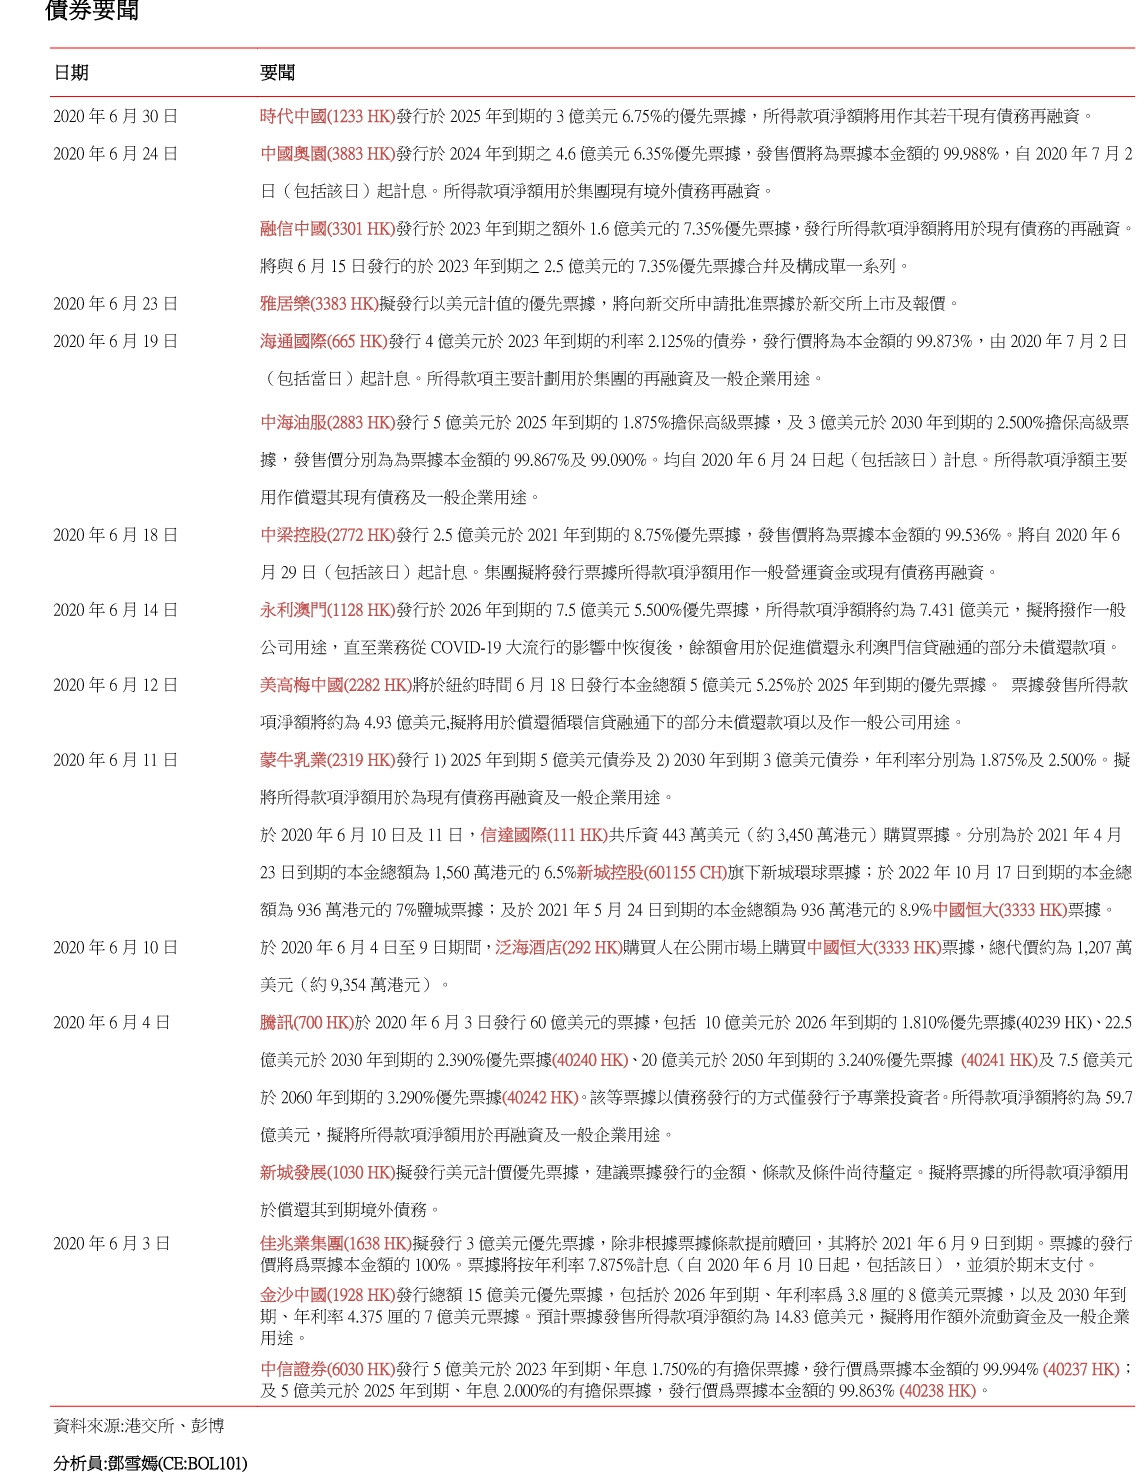 南華金融 SCtrade.com 企業要聞 (7月3日) |鳳祥/中科天元招股 綠動增項目